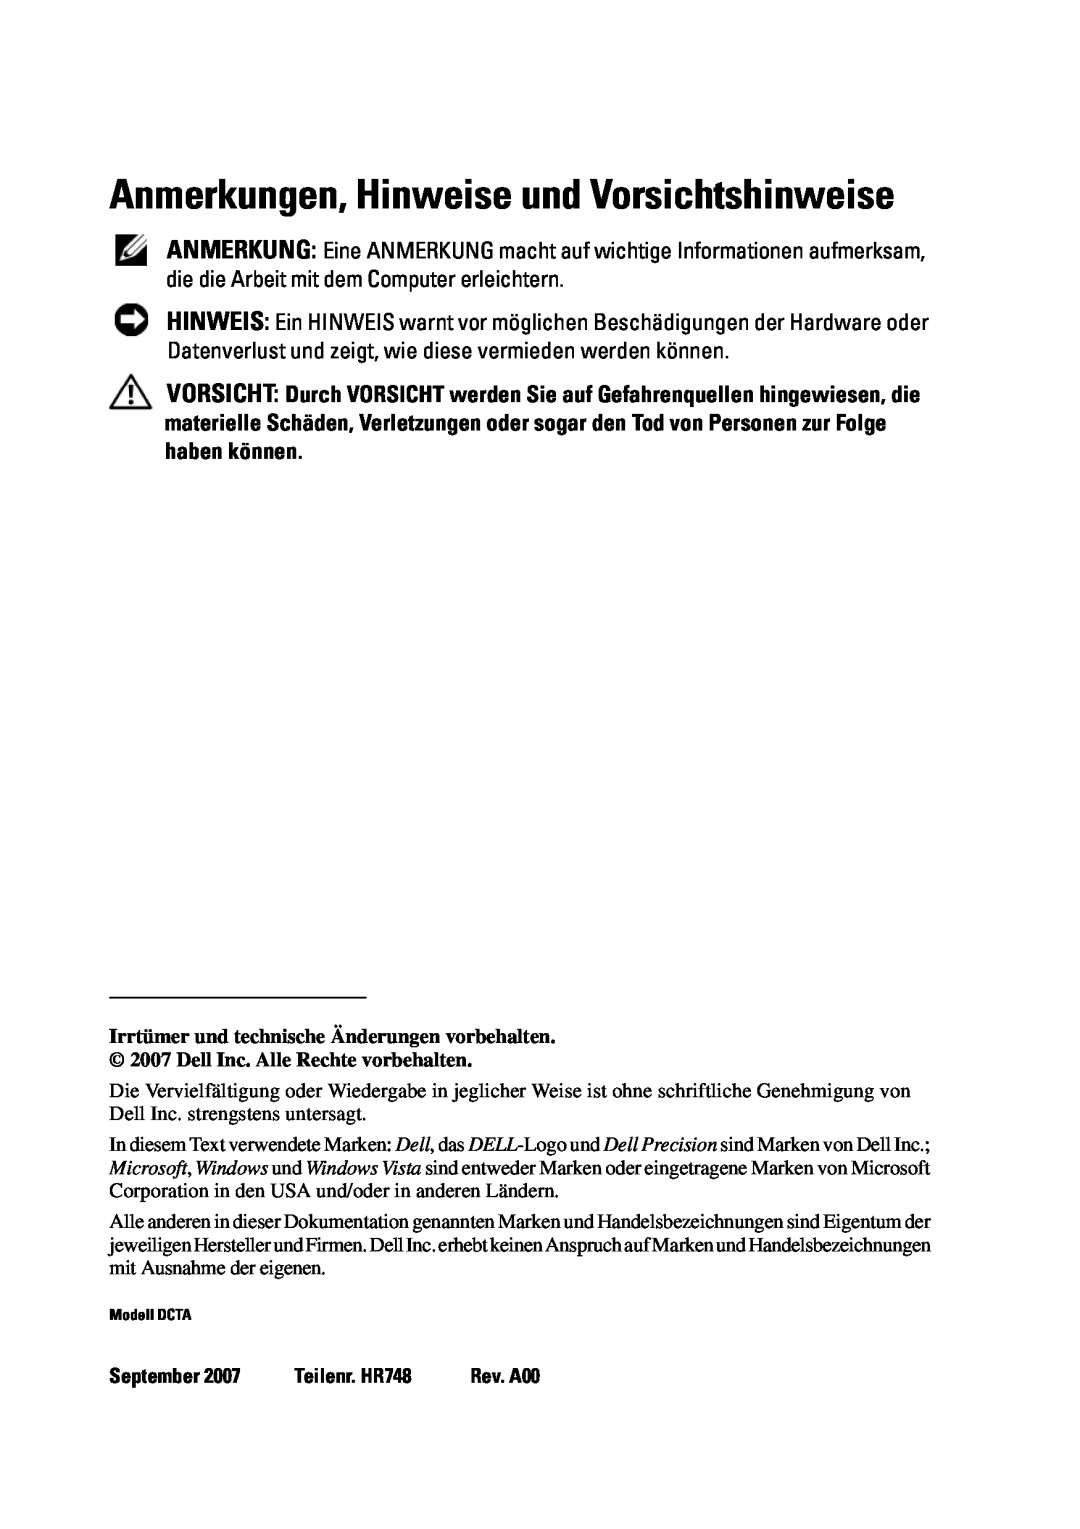 Dell T5400 manual Anmerkungen, Hinweise und Vorsichtshinweise, September, Teilenr. HR748 